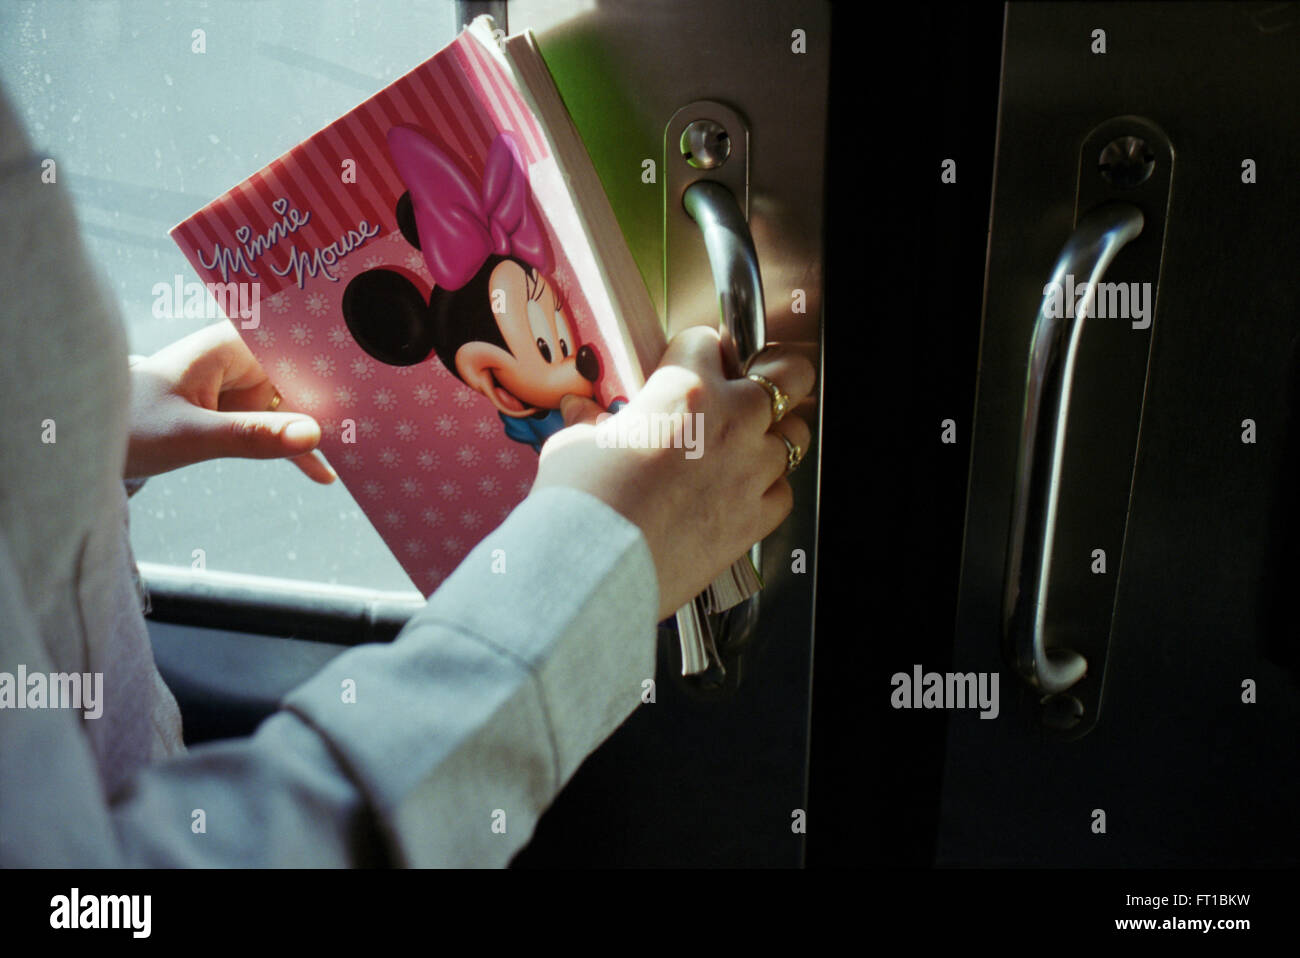 Ragazze nella metropolitana del Cairo che tiene libro di esercizi con una foto di Minnie mouse, Cairo Egitto Foto Stock